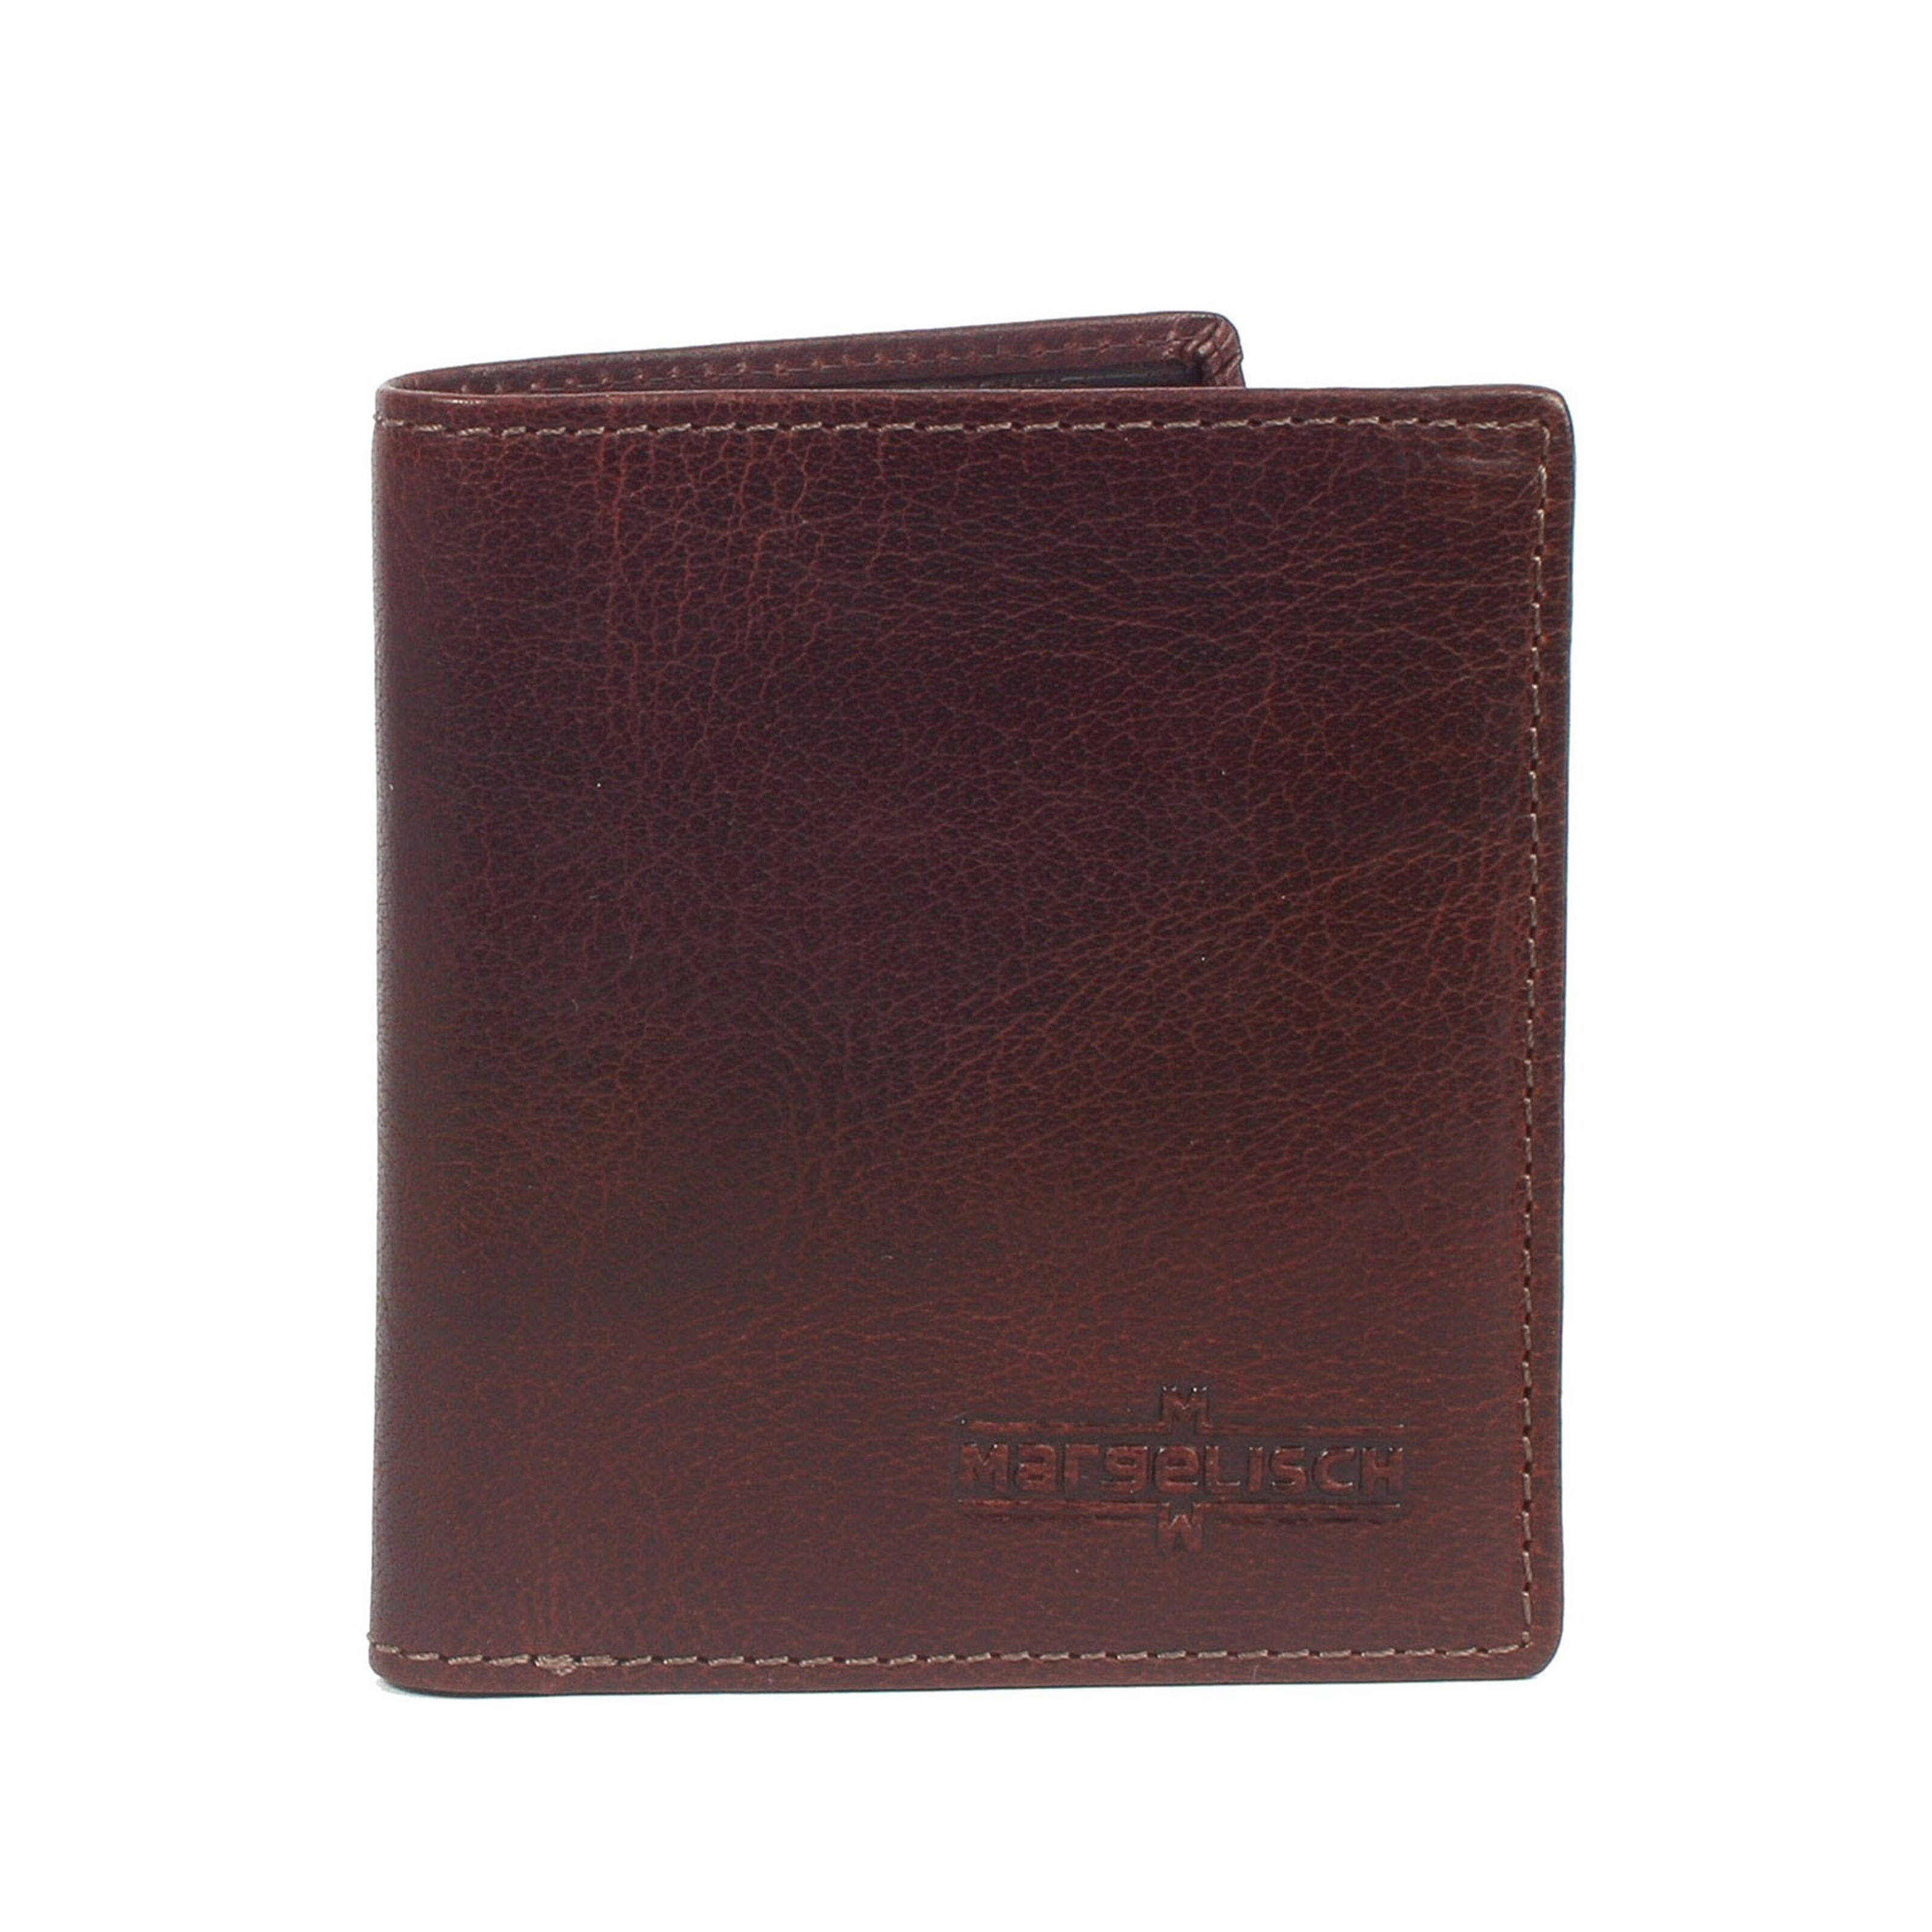 Tokyo brown 2 Buy RFID wallet wholesale